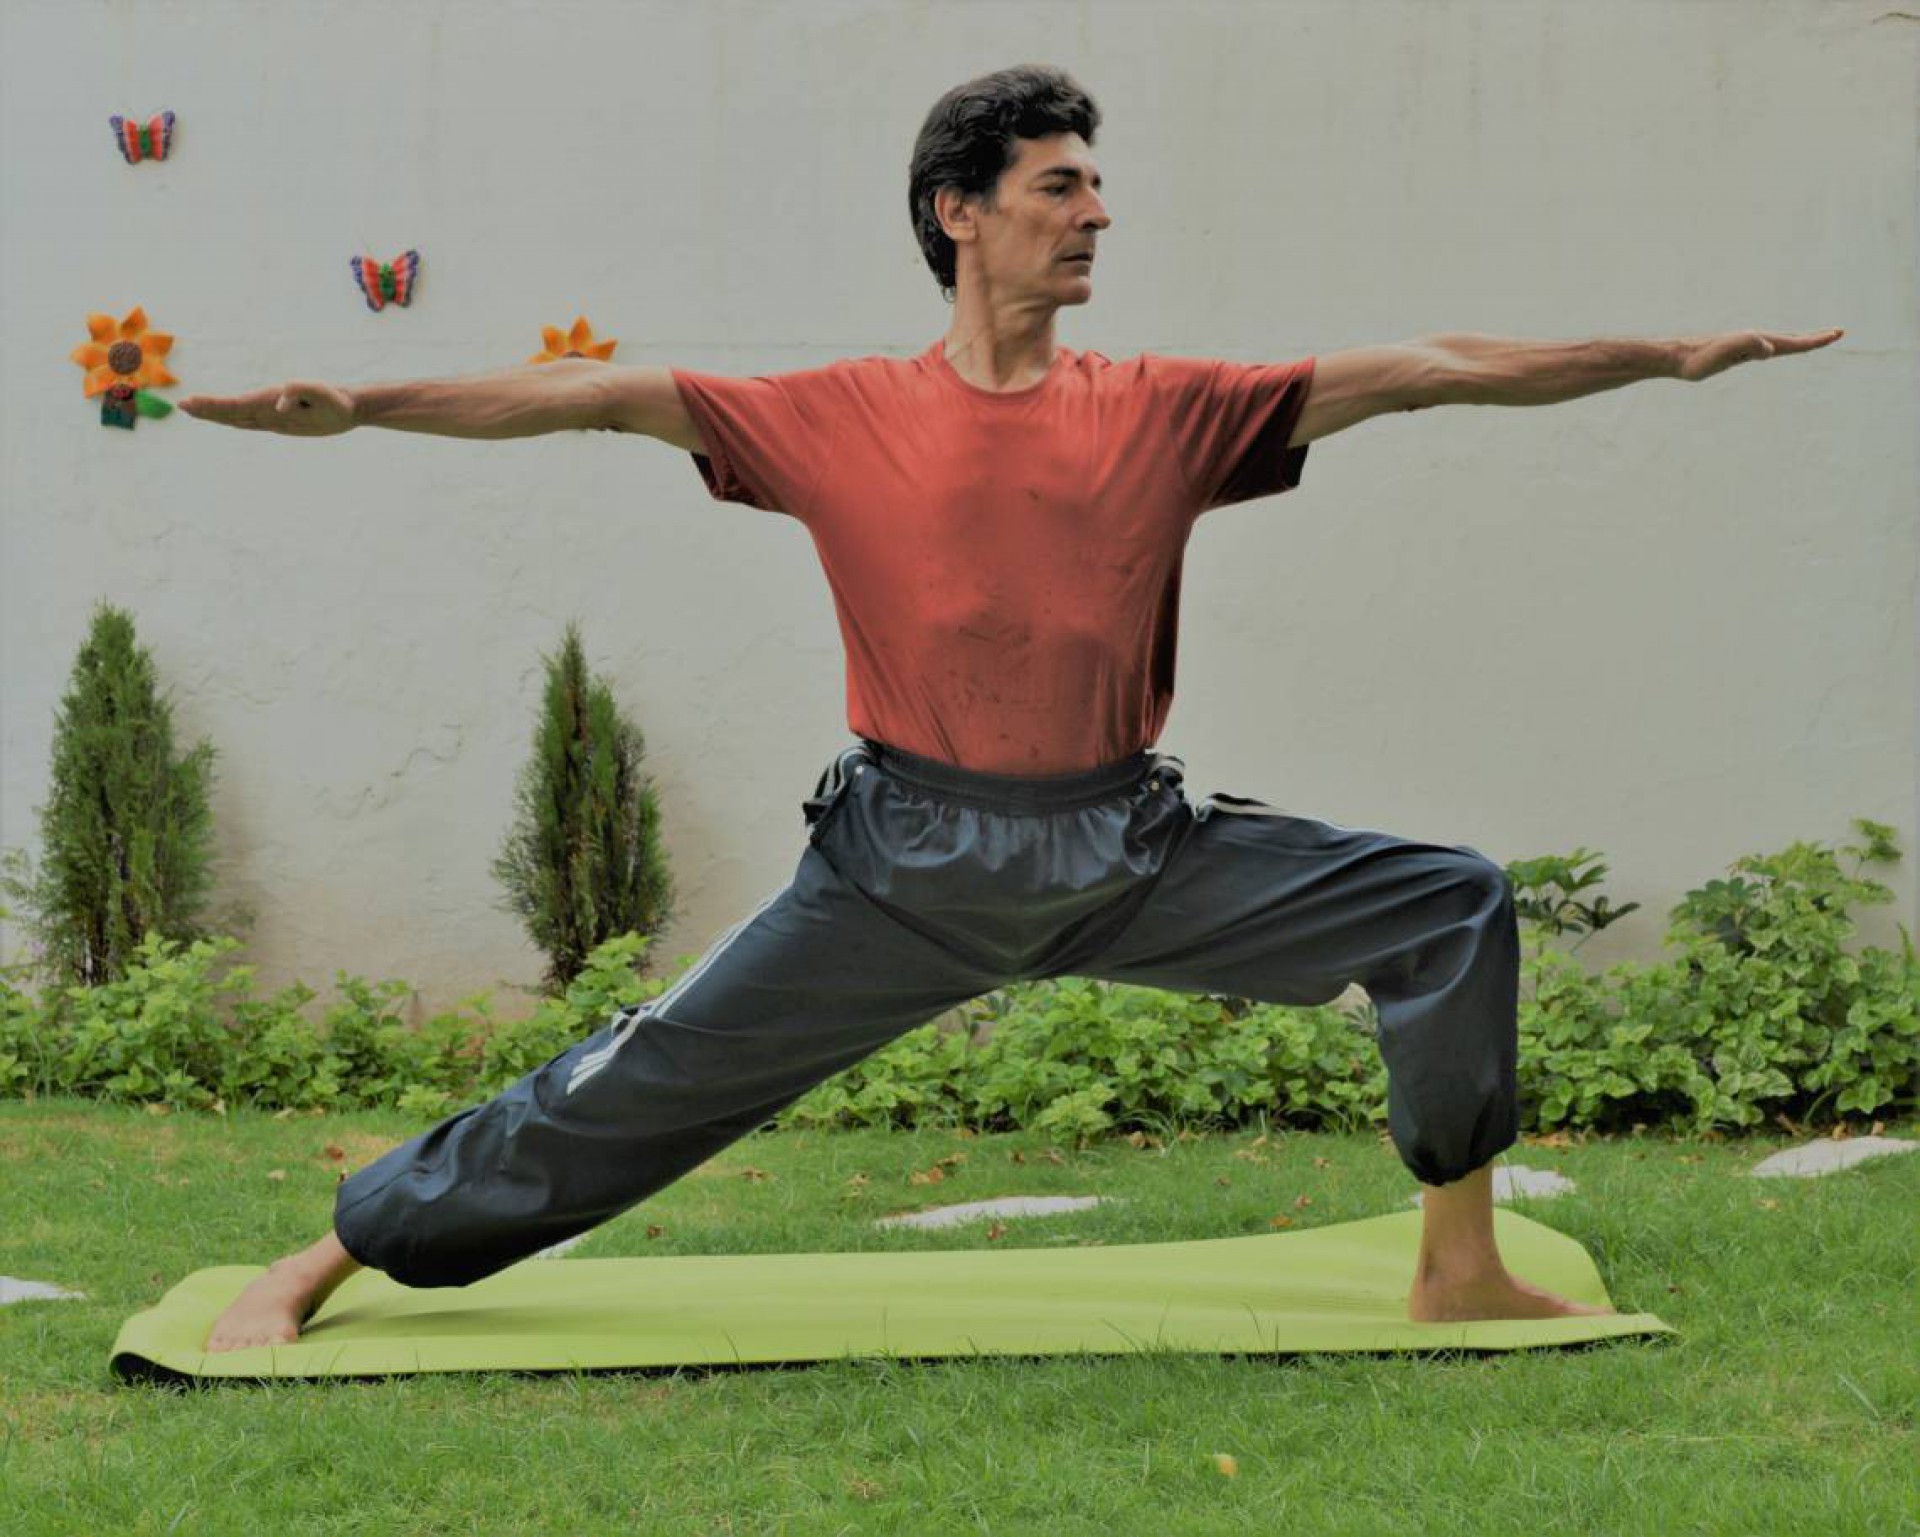 Helder Lima é professor de yoga há mais 20 anos. Práticas de saúde e bem-estar seguem em alta no novo ano (Foto: divulgação)